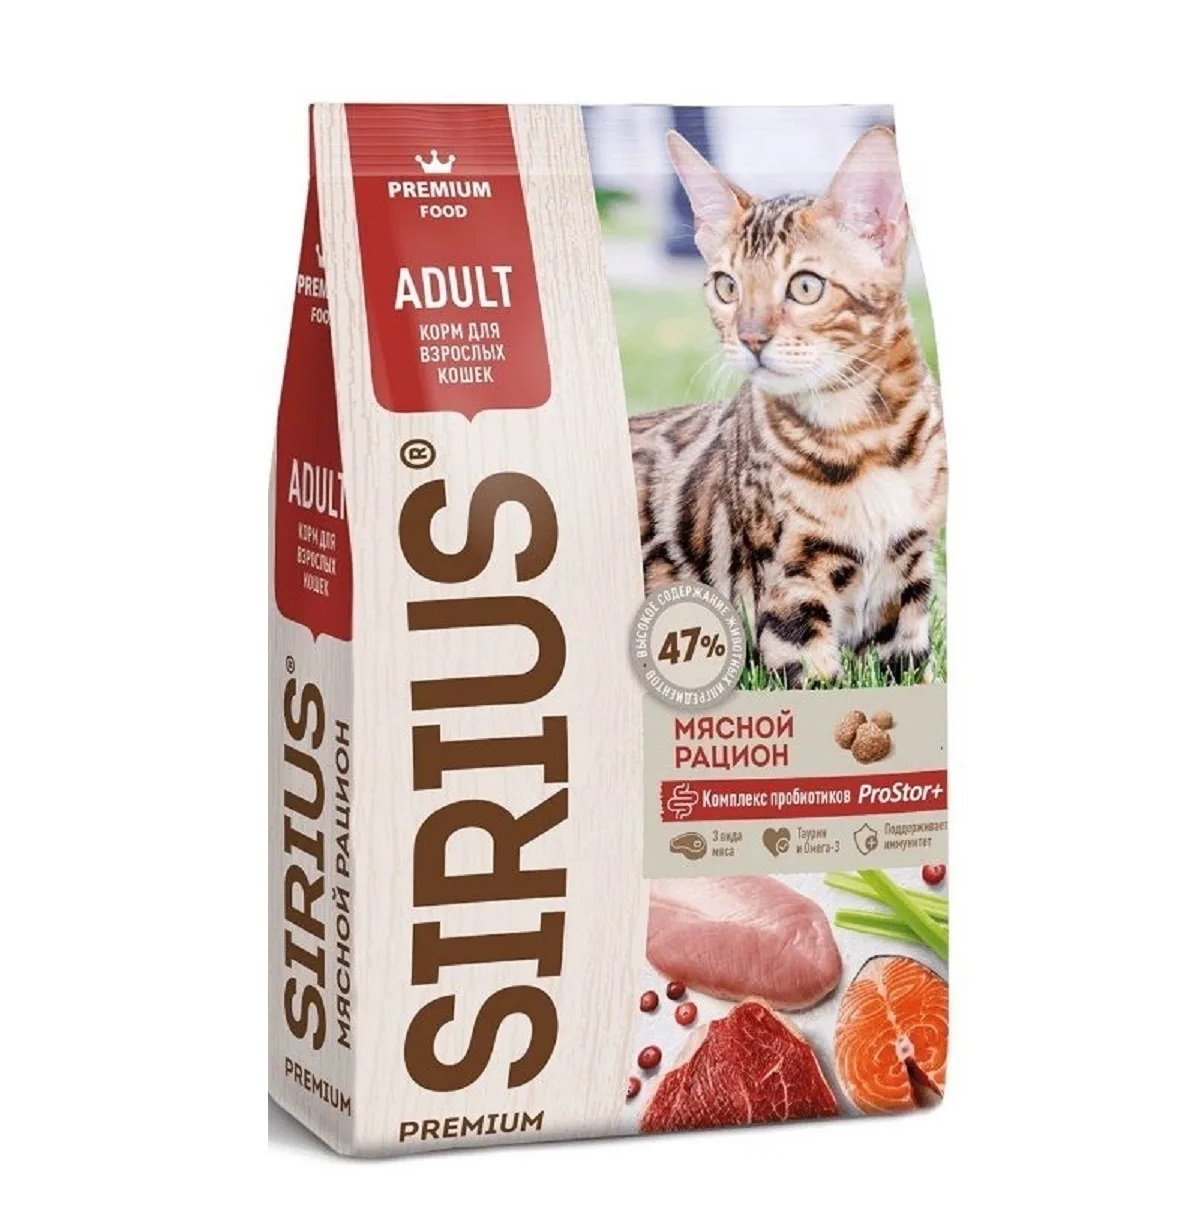 Сириус 400гр - для кошек Мясной рацион (Sirius)